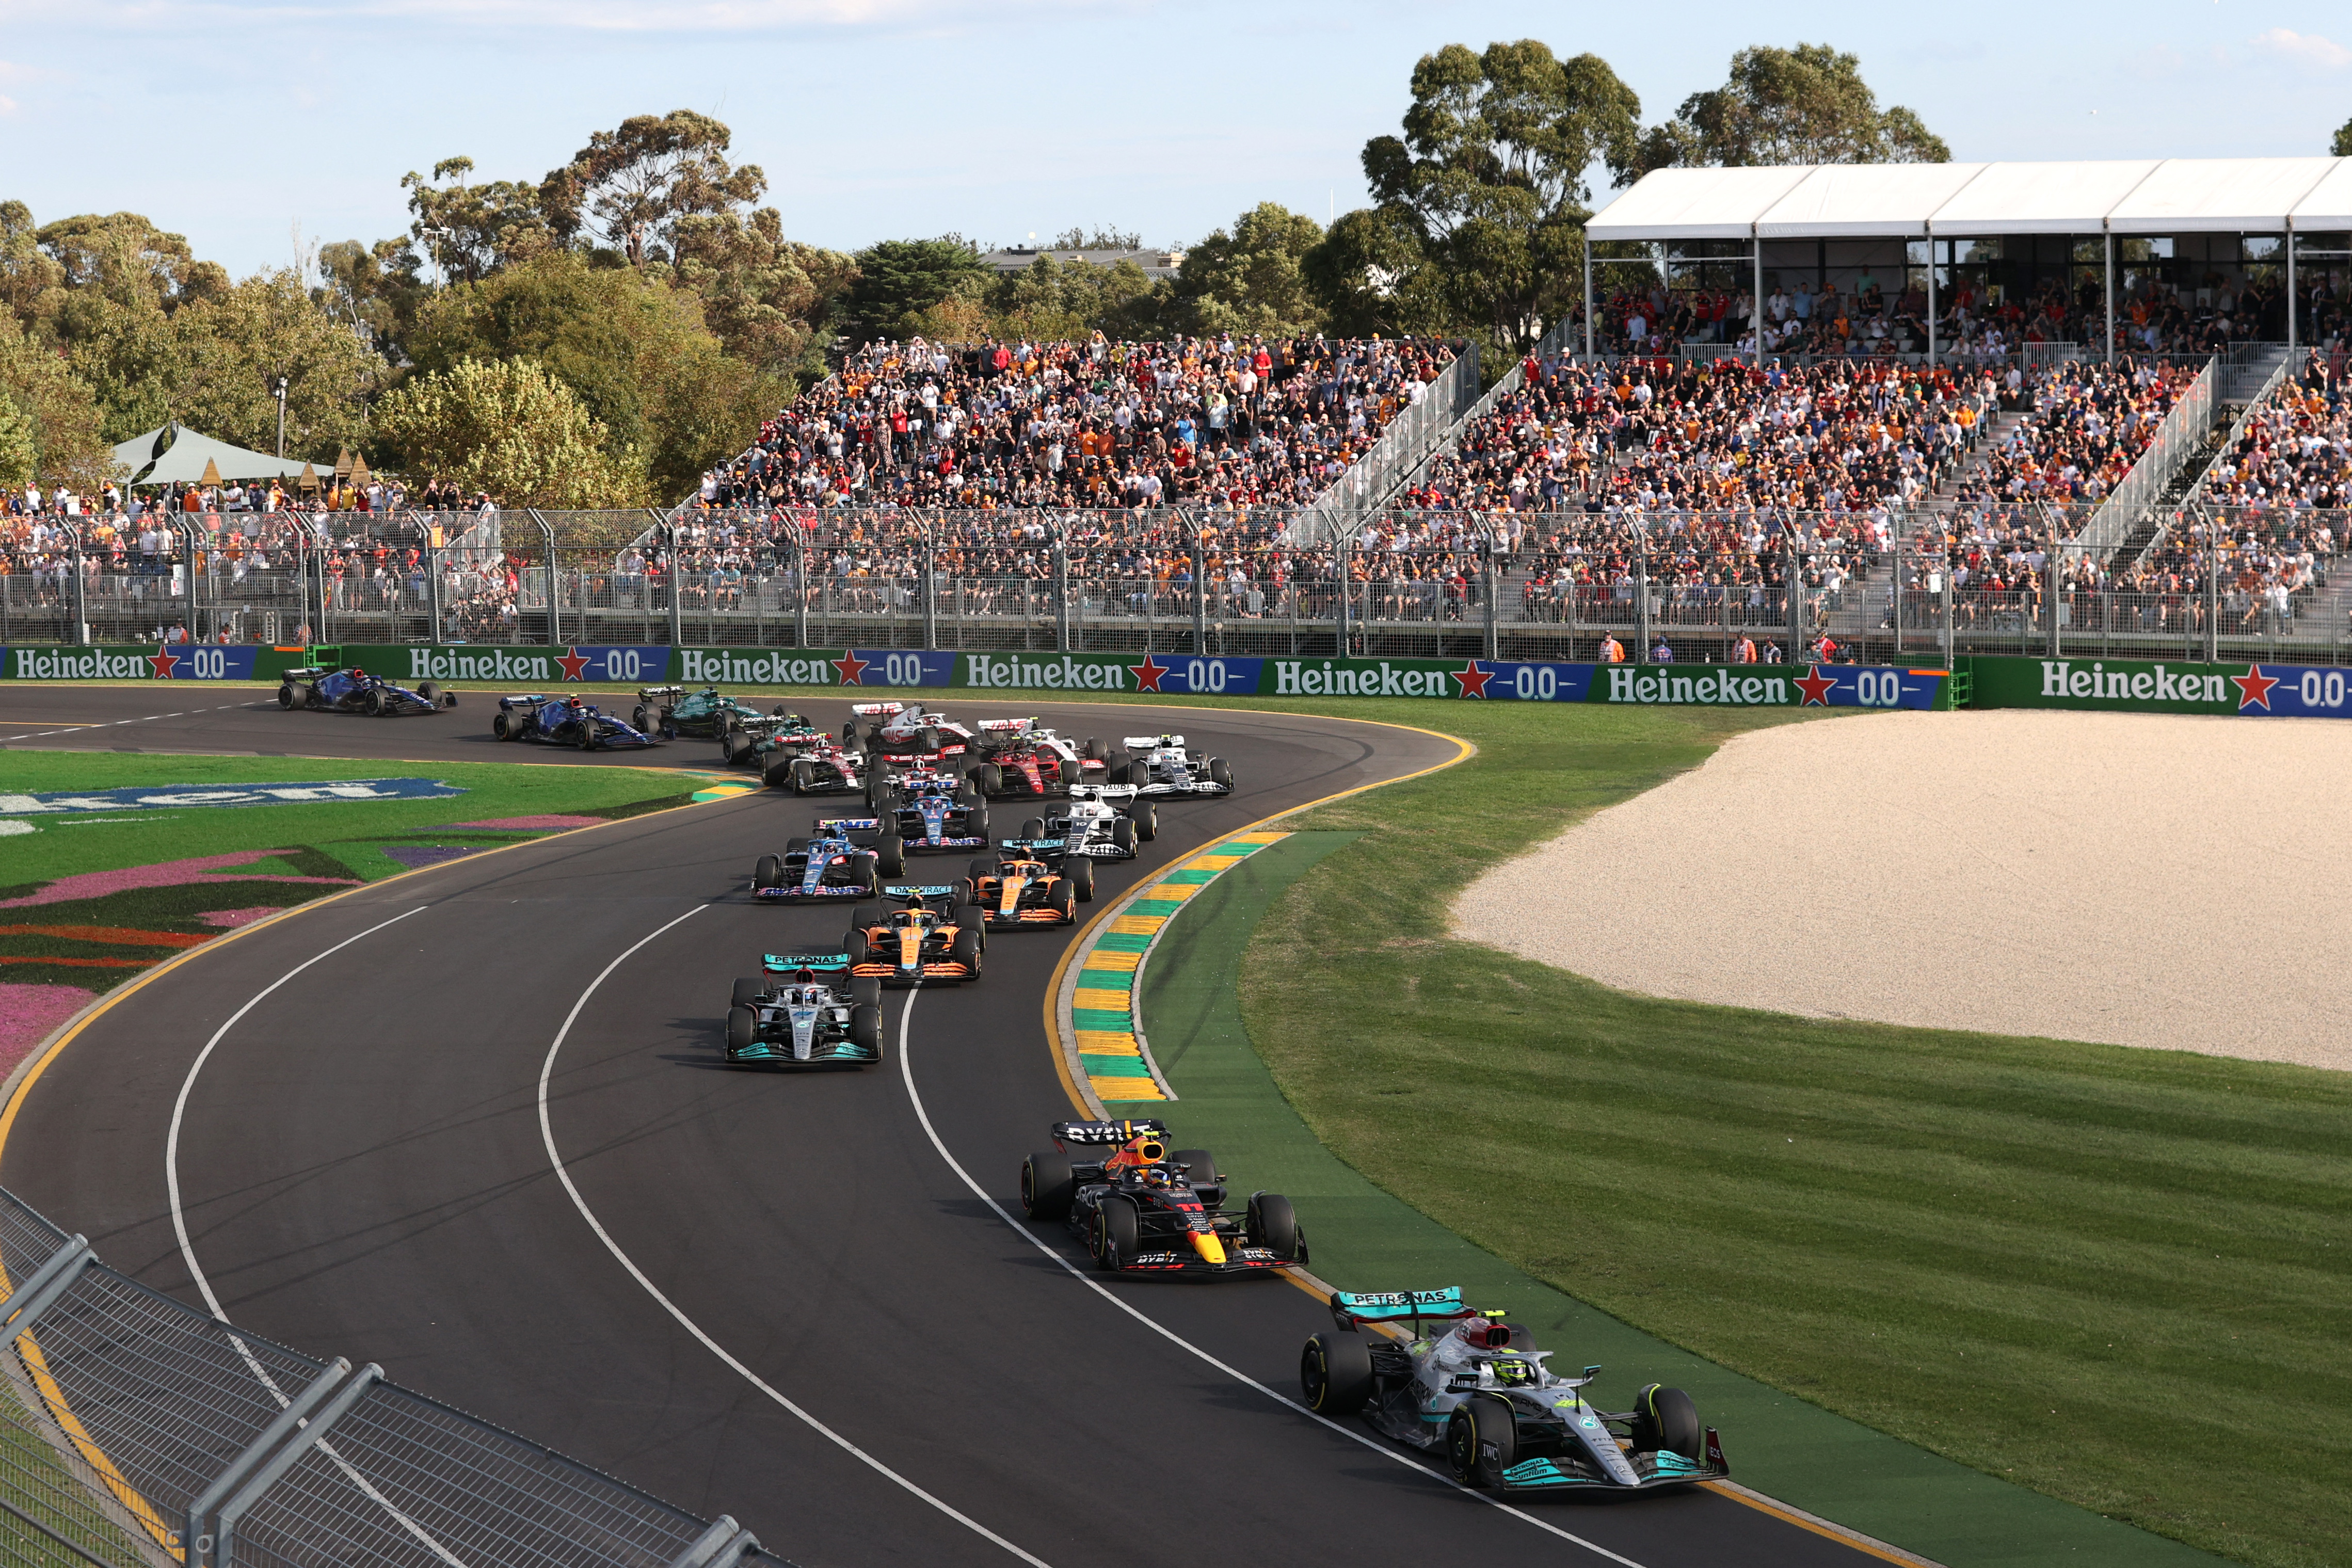 La largada en Melbourne, el circuito callejero australiano donde la F1 volvió tras tres años por la pandemia de COVID-19 (REUTERS/Loren Elliott)